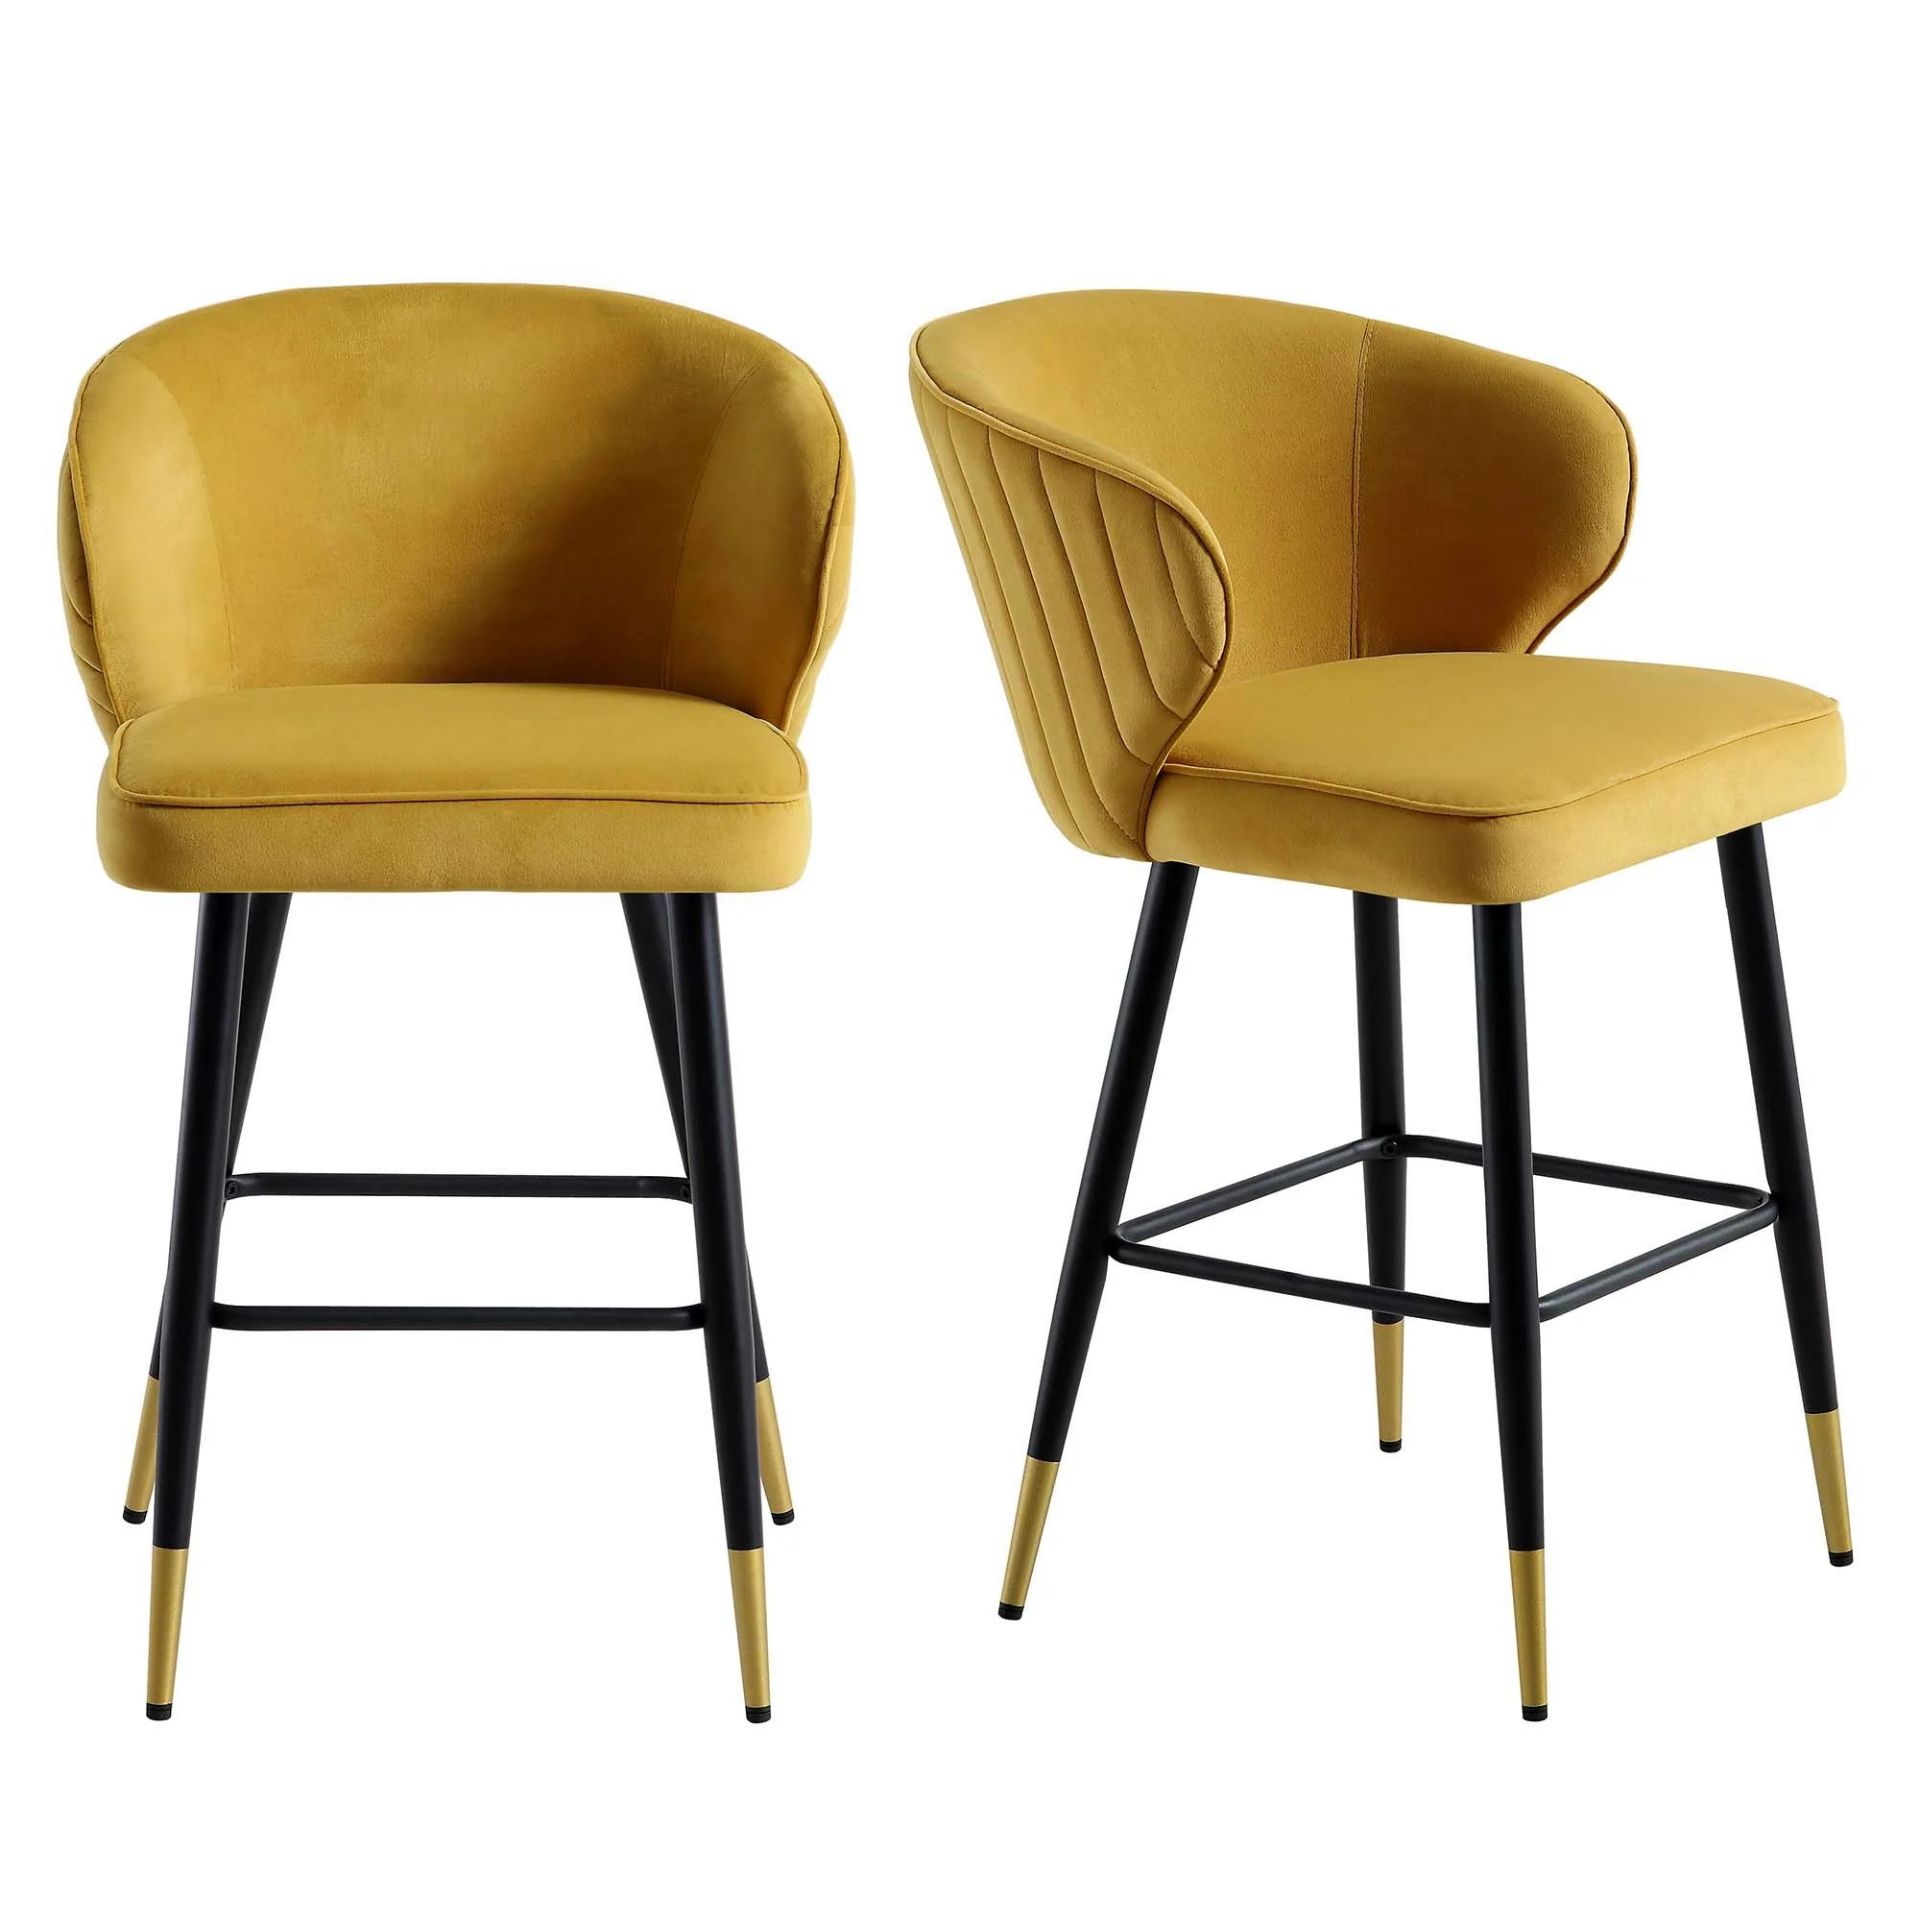 Langham Set of 2 Mustard Velvet Upholstered Carver Counter Stools. - ER29. RRP £259.99. Newly - Image 2 of 4